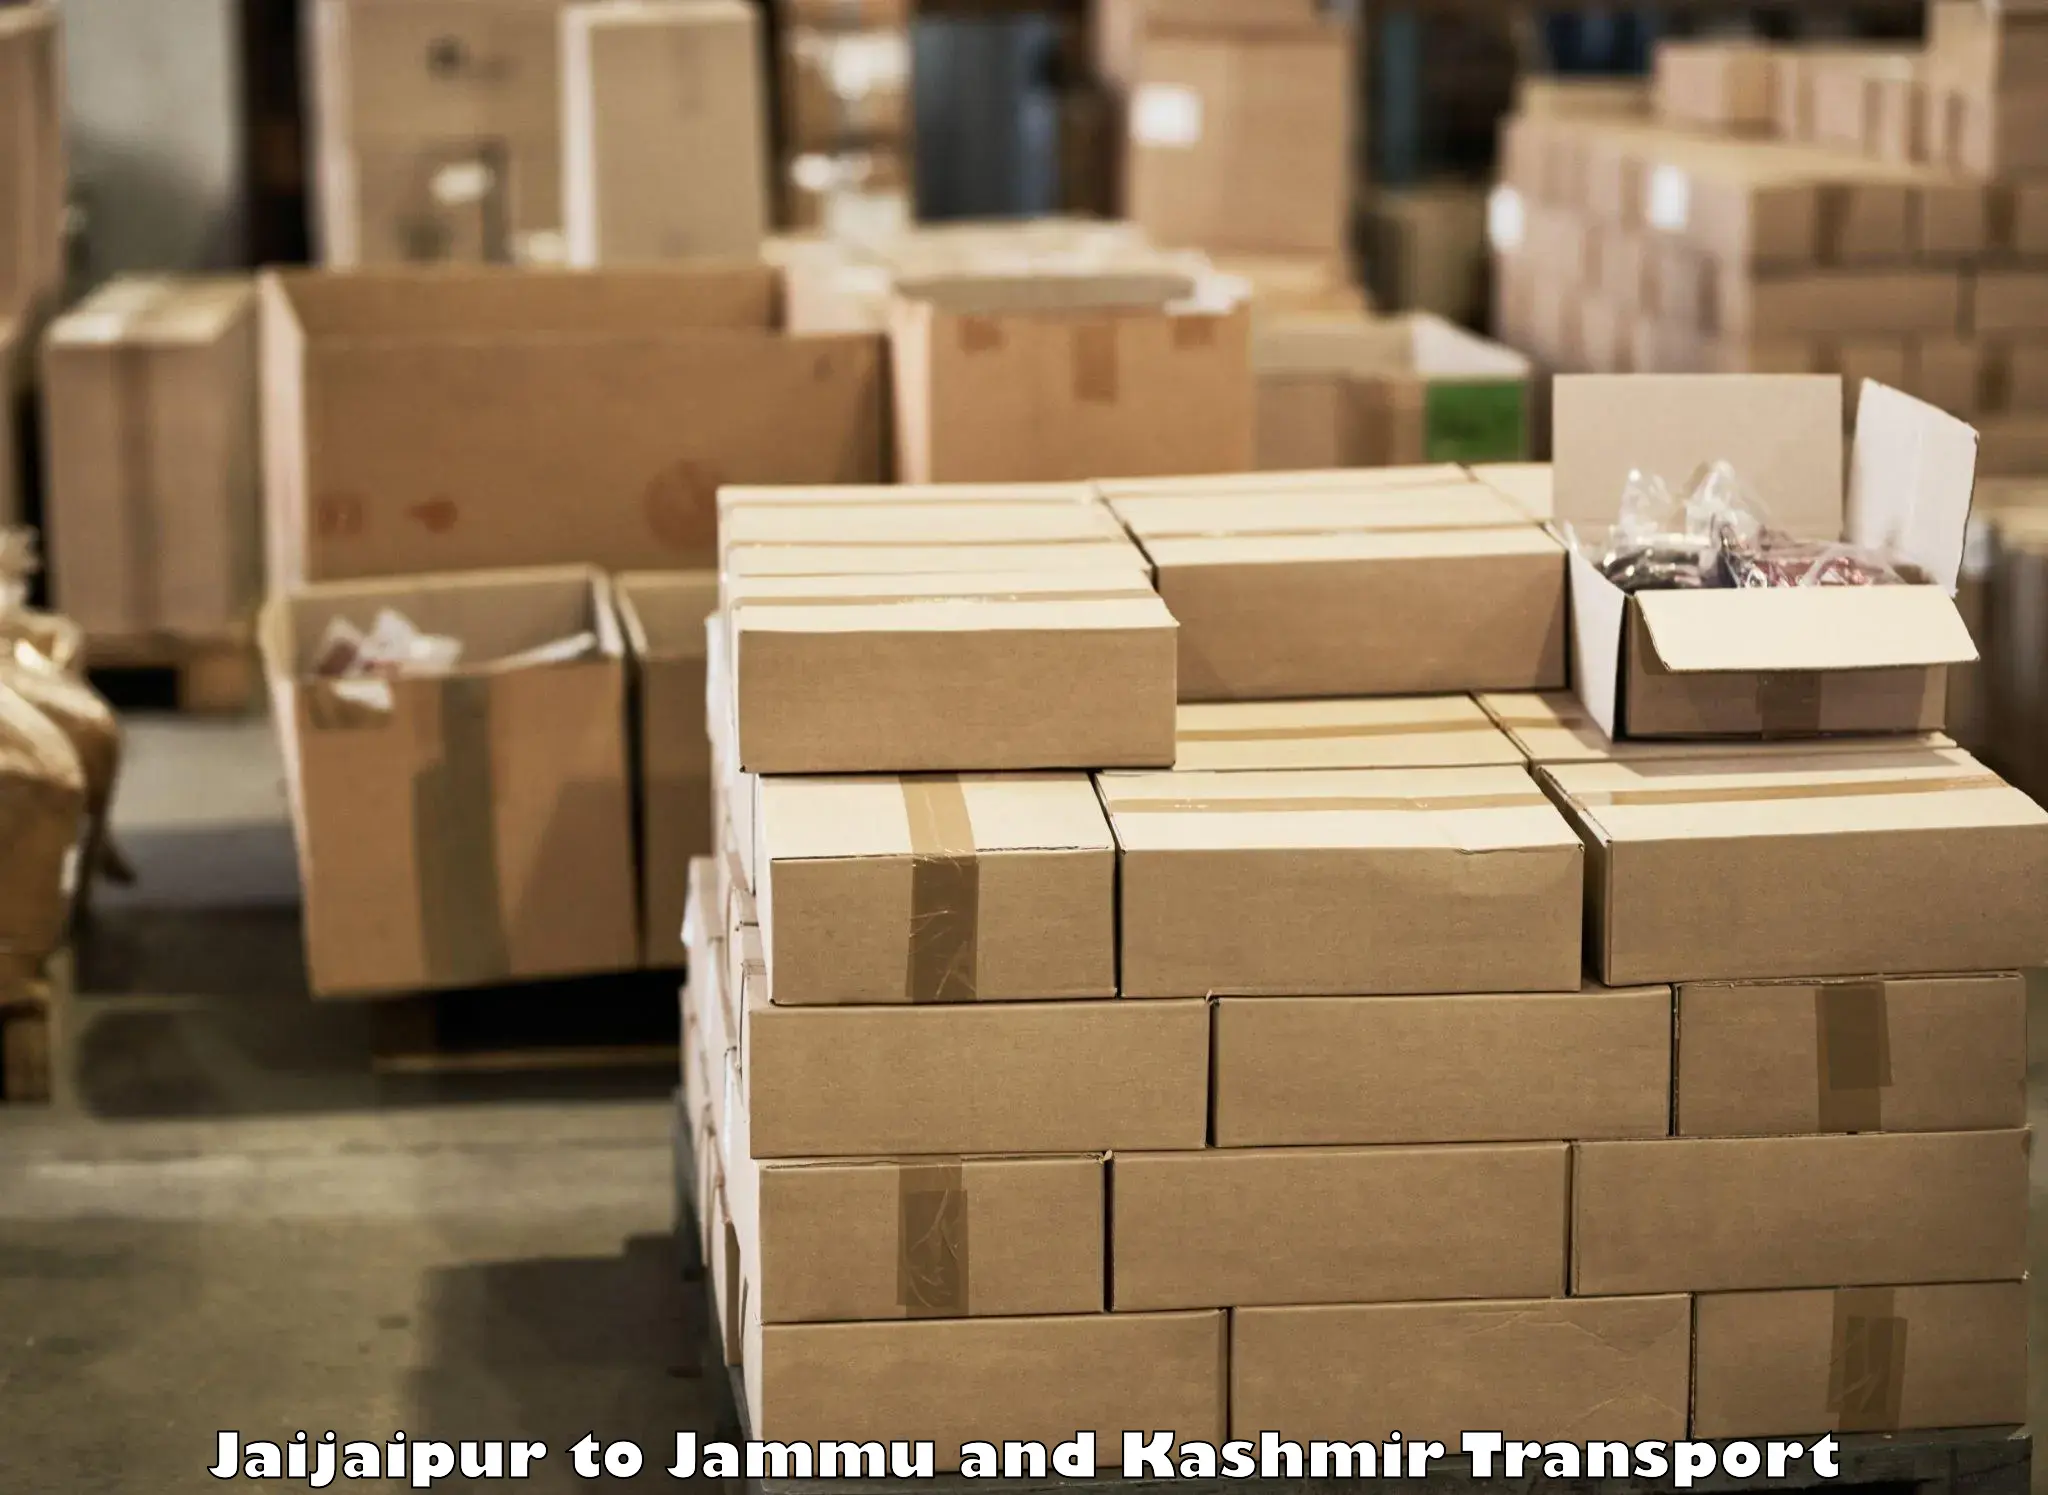 International cargo transportation services Jaijaipur to Hiranagar